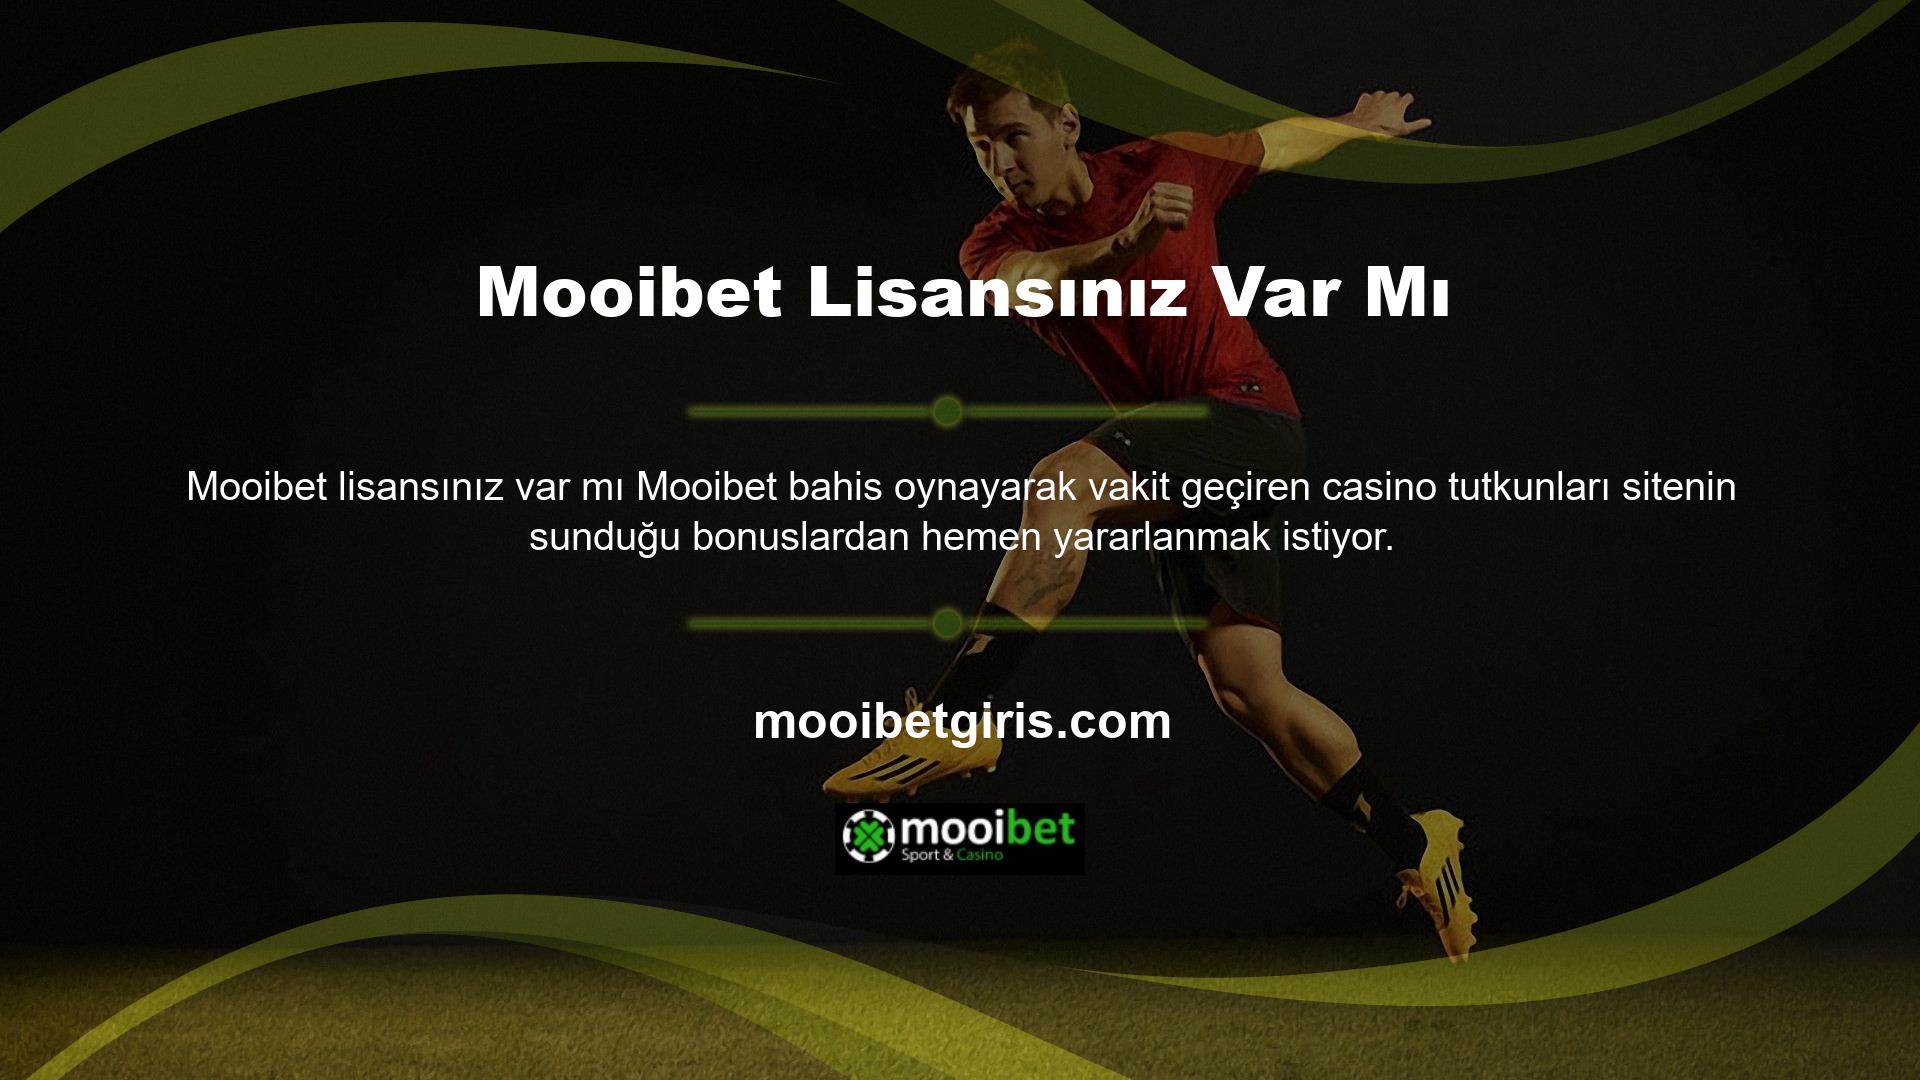 Mooibet web sitesinde canlı sohbet talebinde bulunan herkesin bonusu anında hesabına geçeceğini söylemekle yetinelim